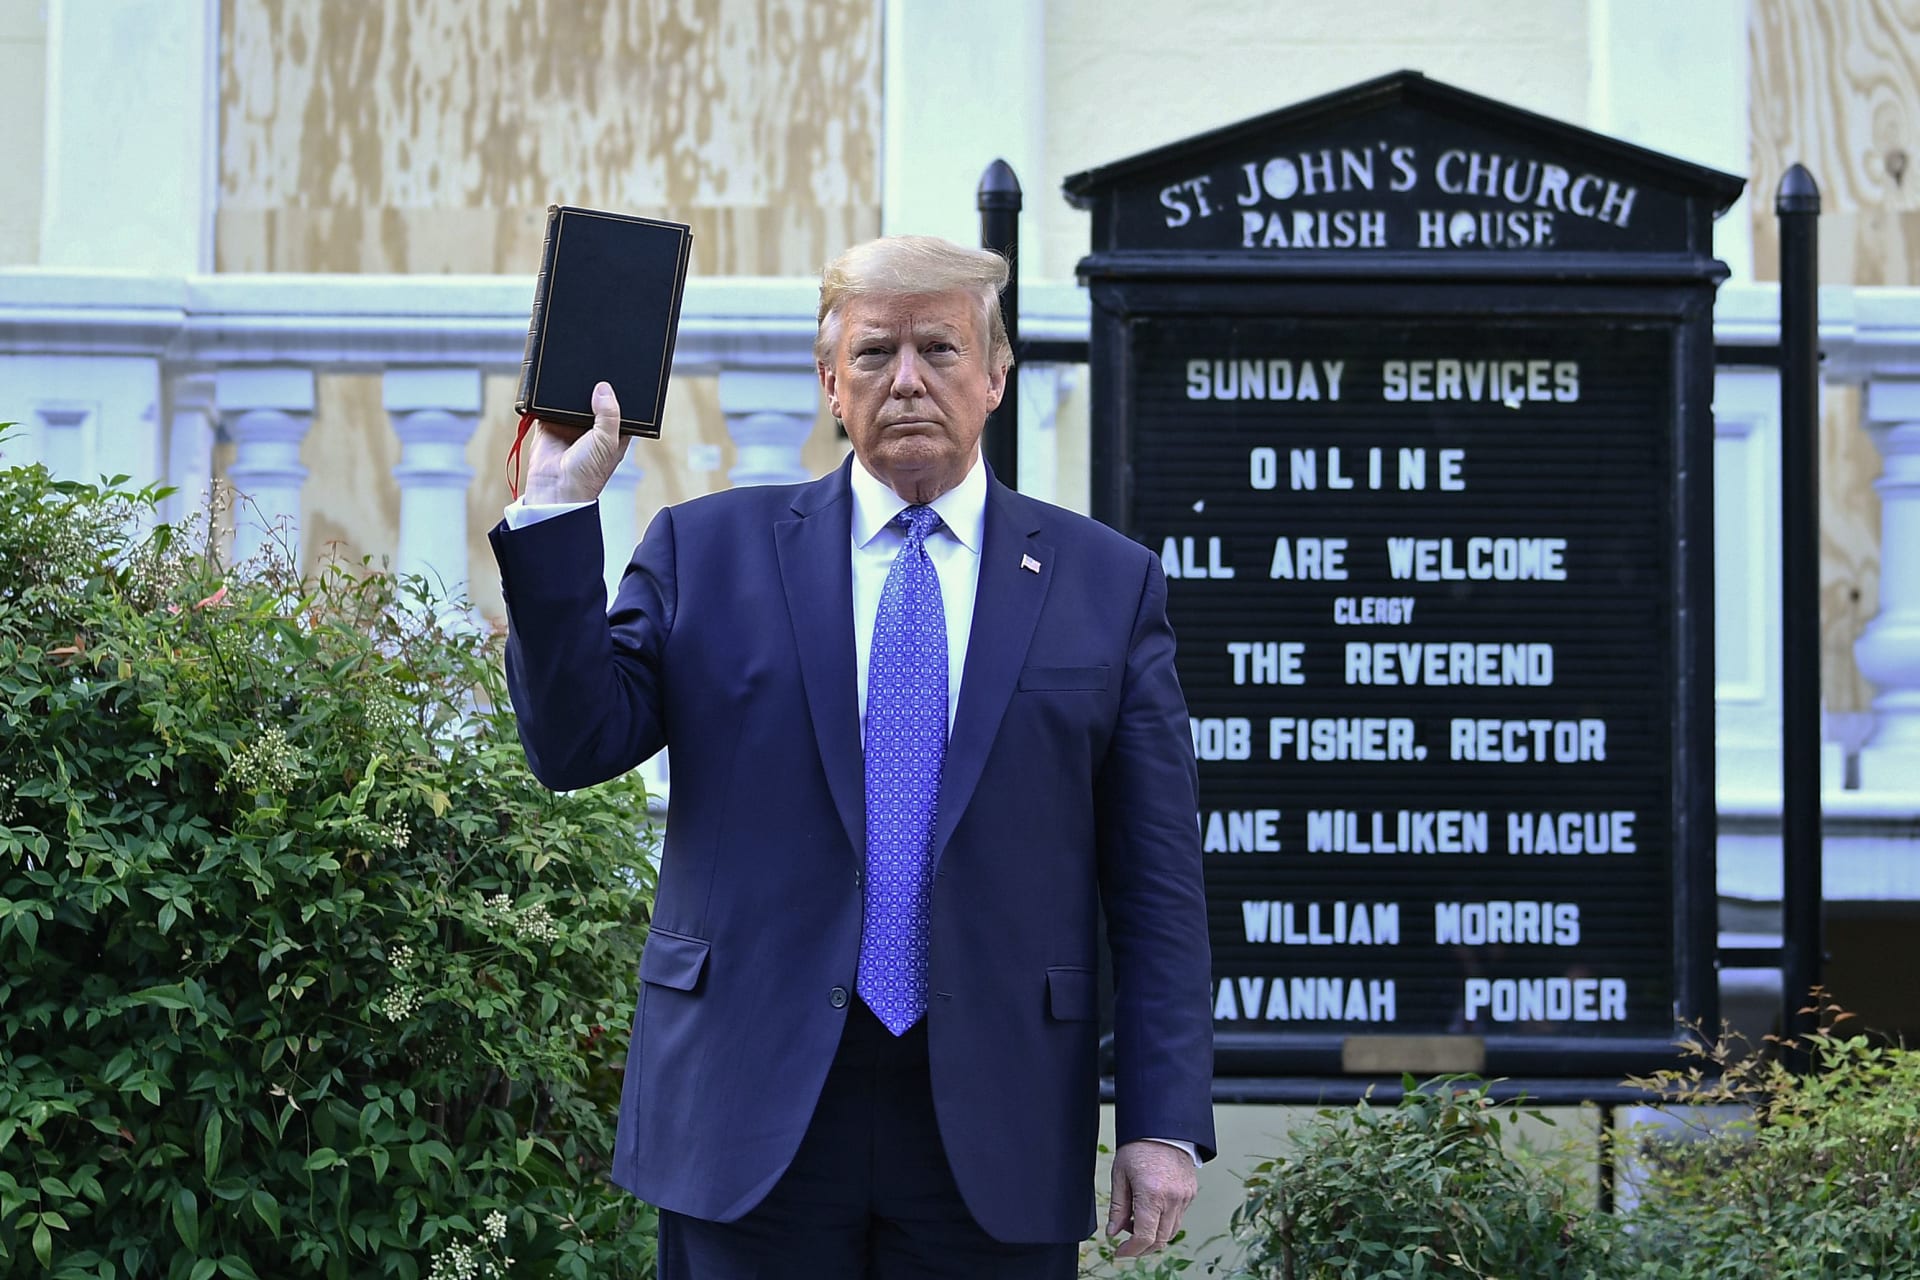 ترامب يرفع الكتاب المقدس أمام كنيسة القديس جون قرب البيت الأبيض